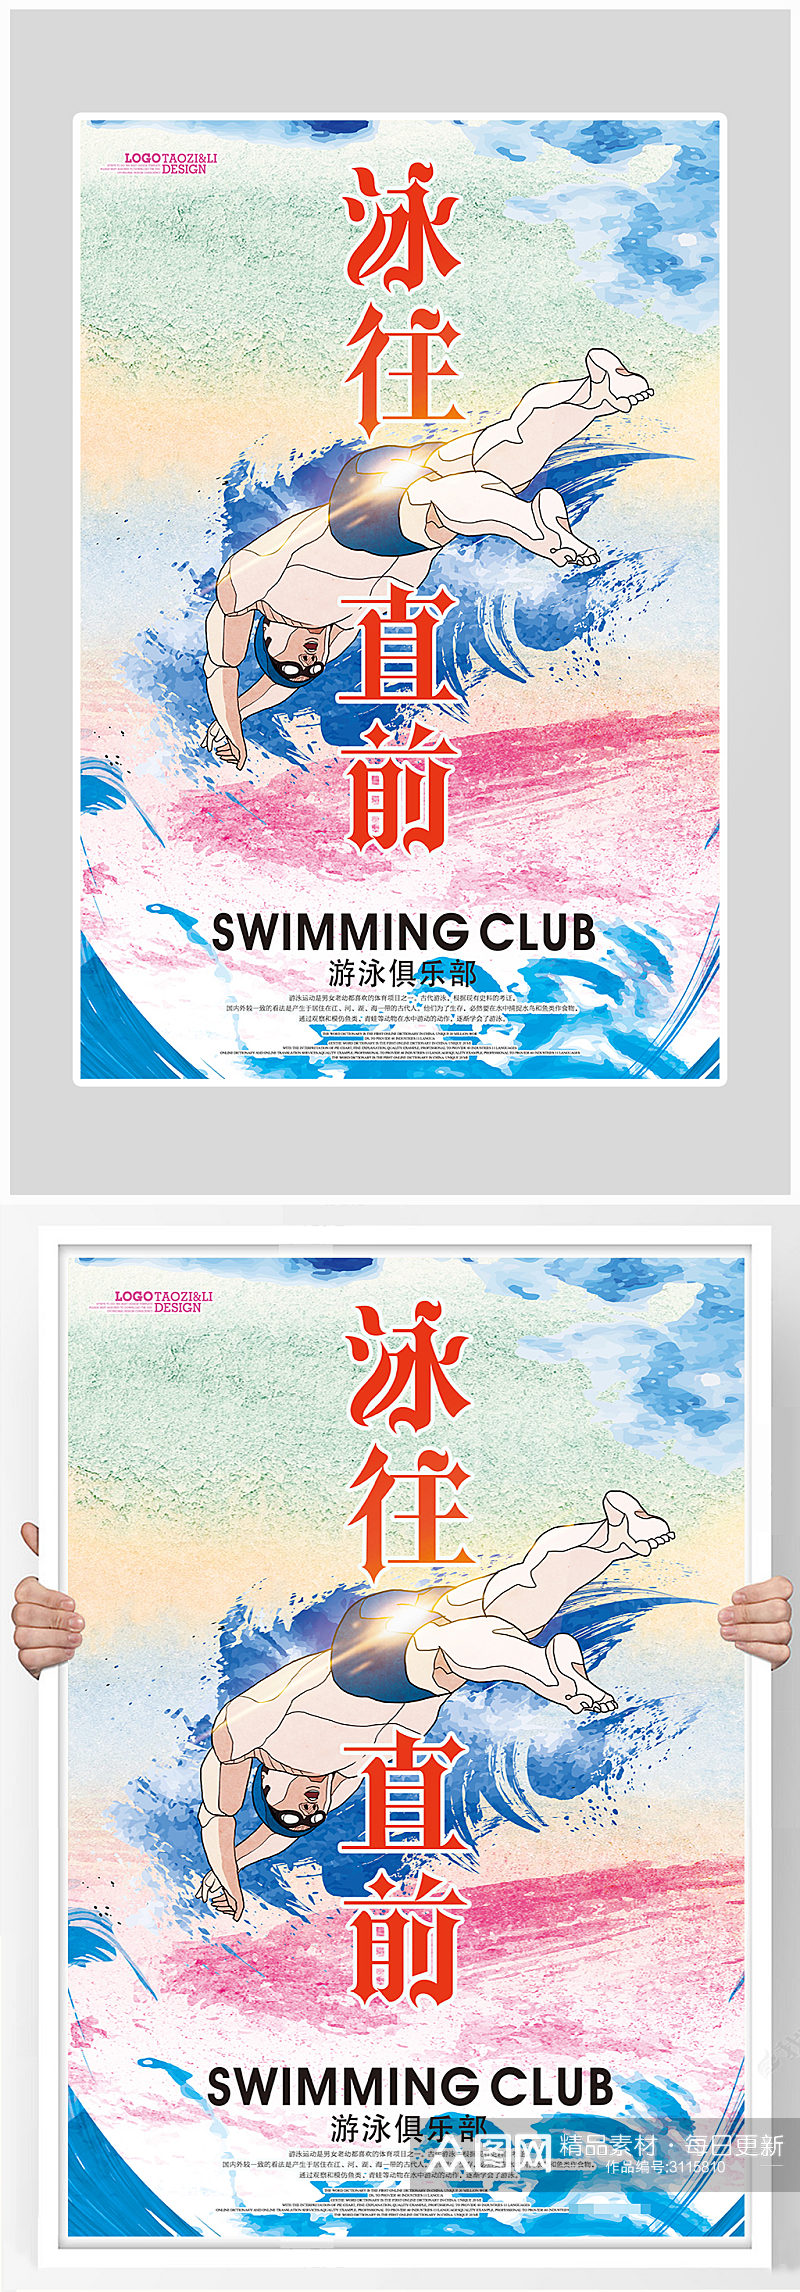 创意简约健身游泳培训海报设计素材